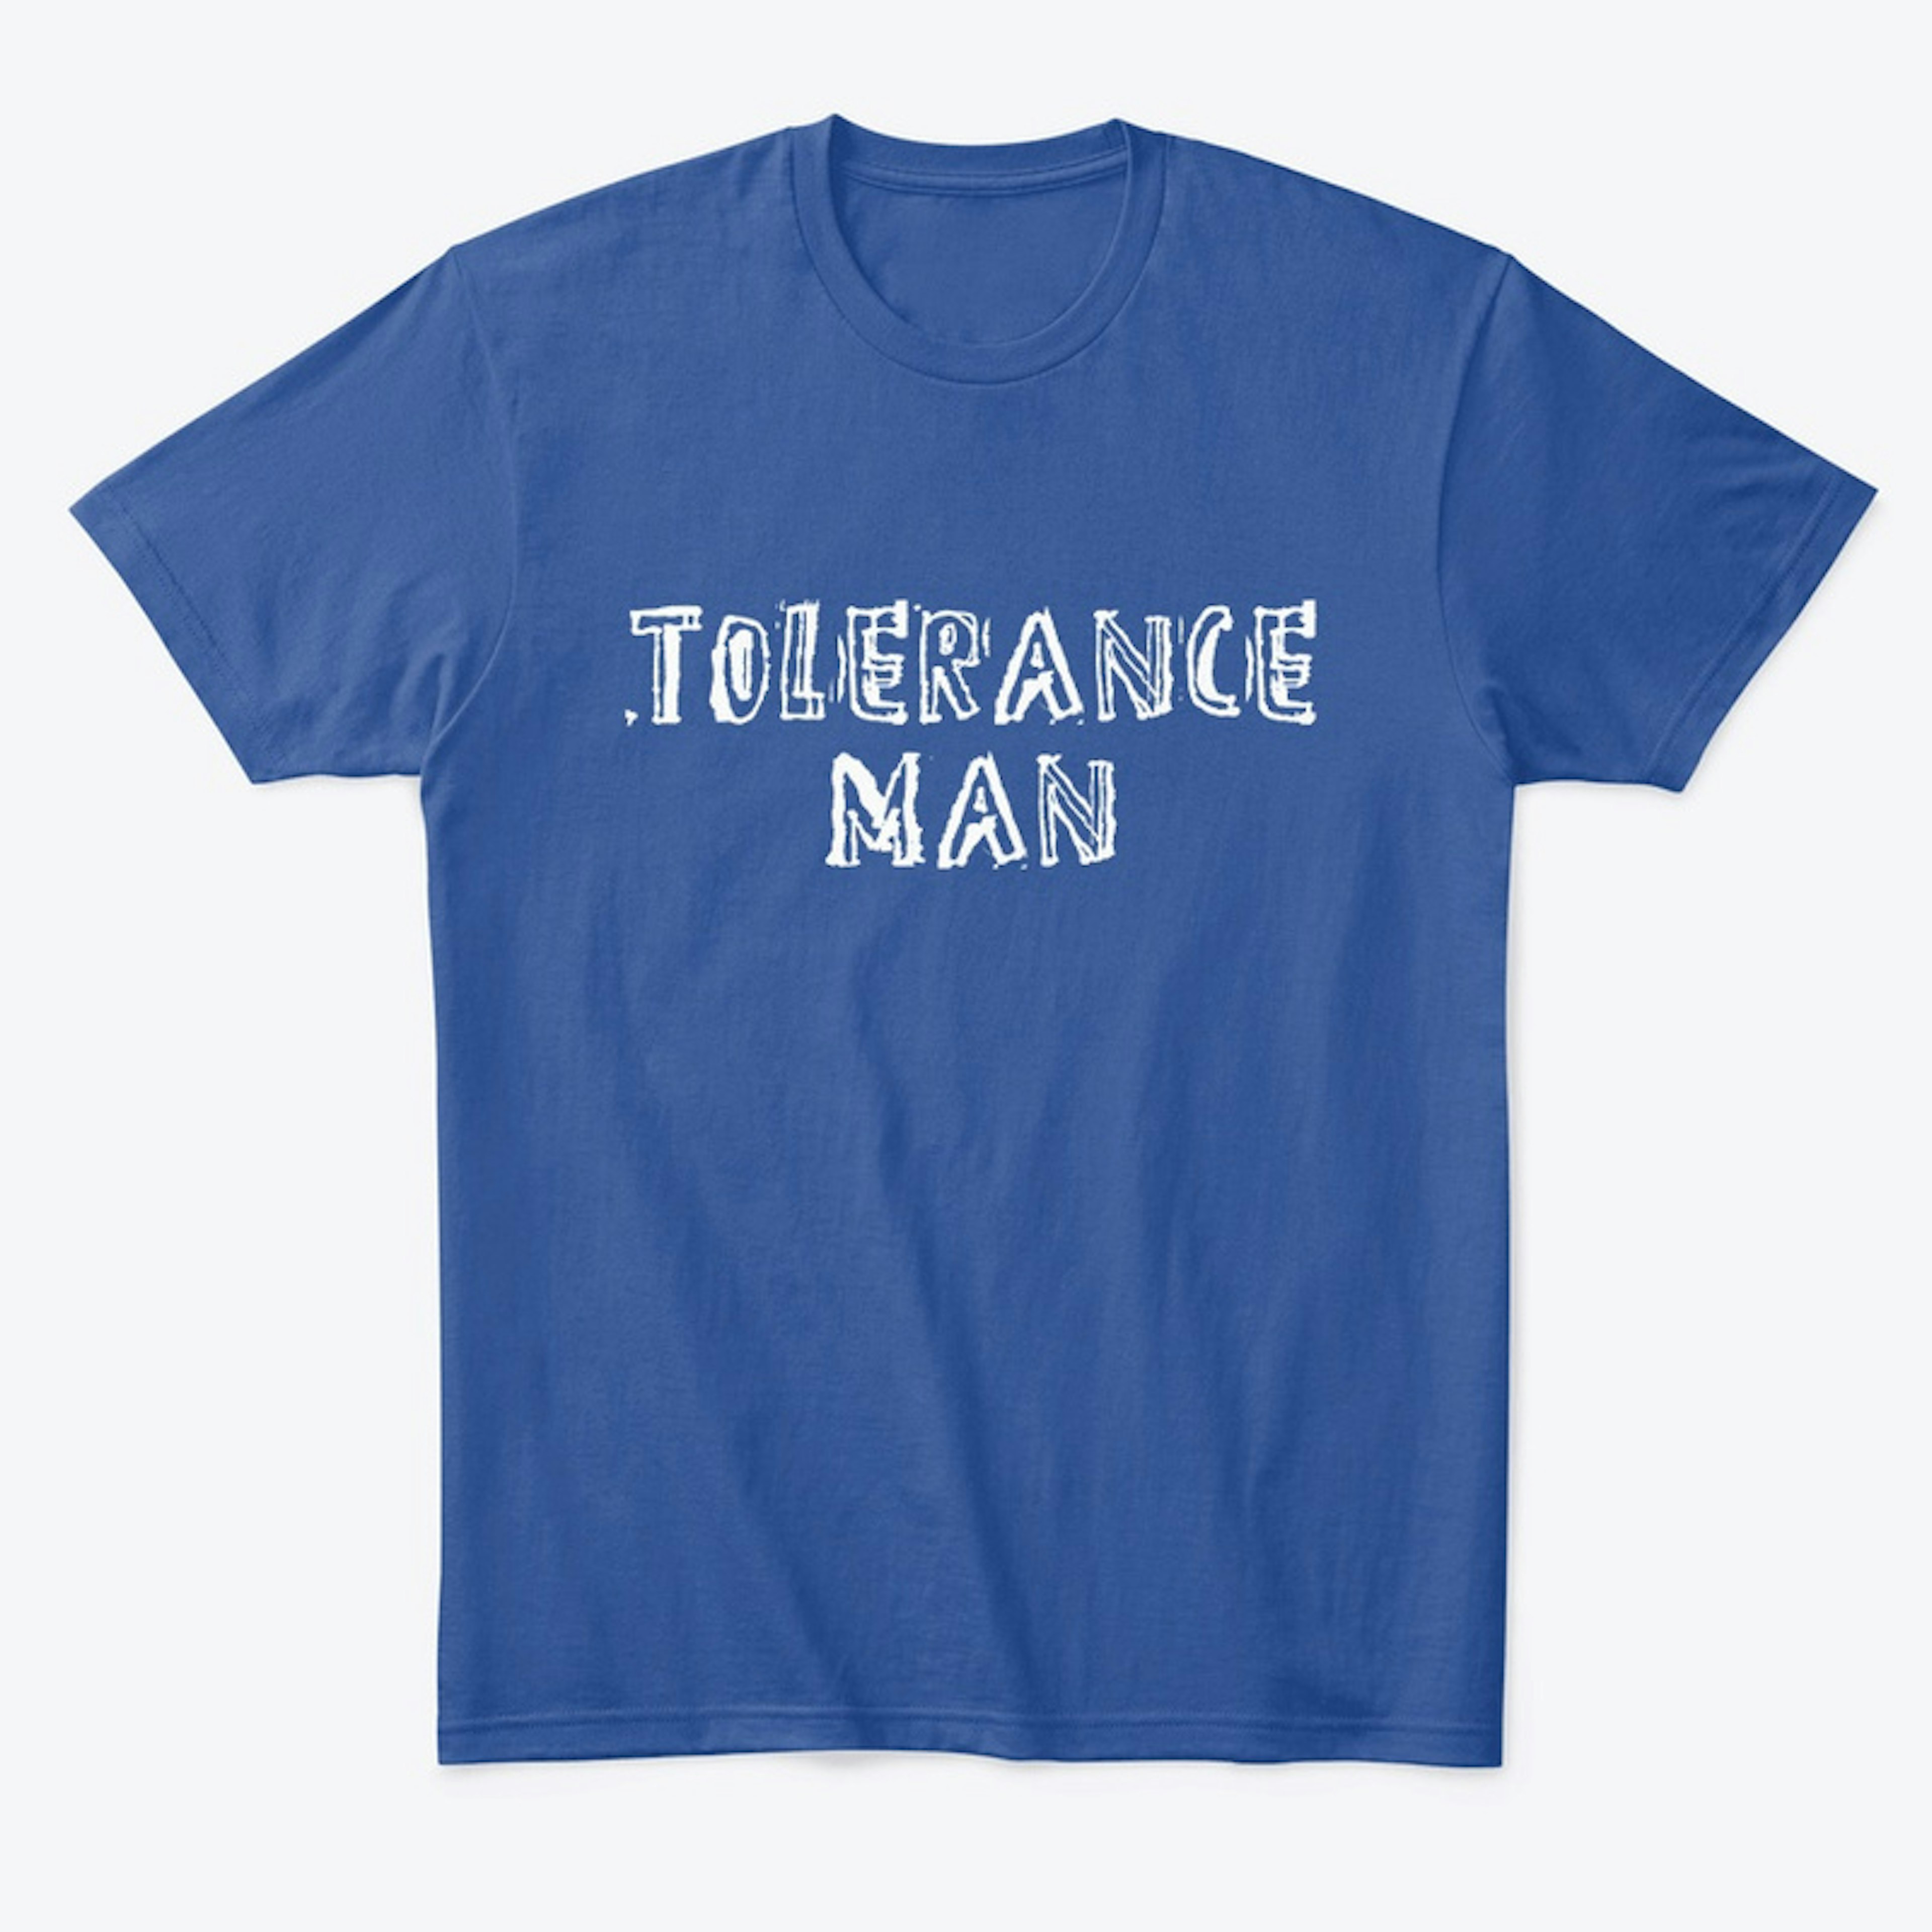 Tolerance man Tee